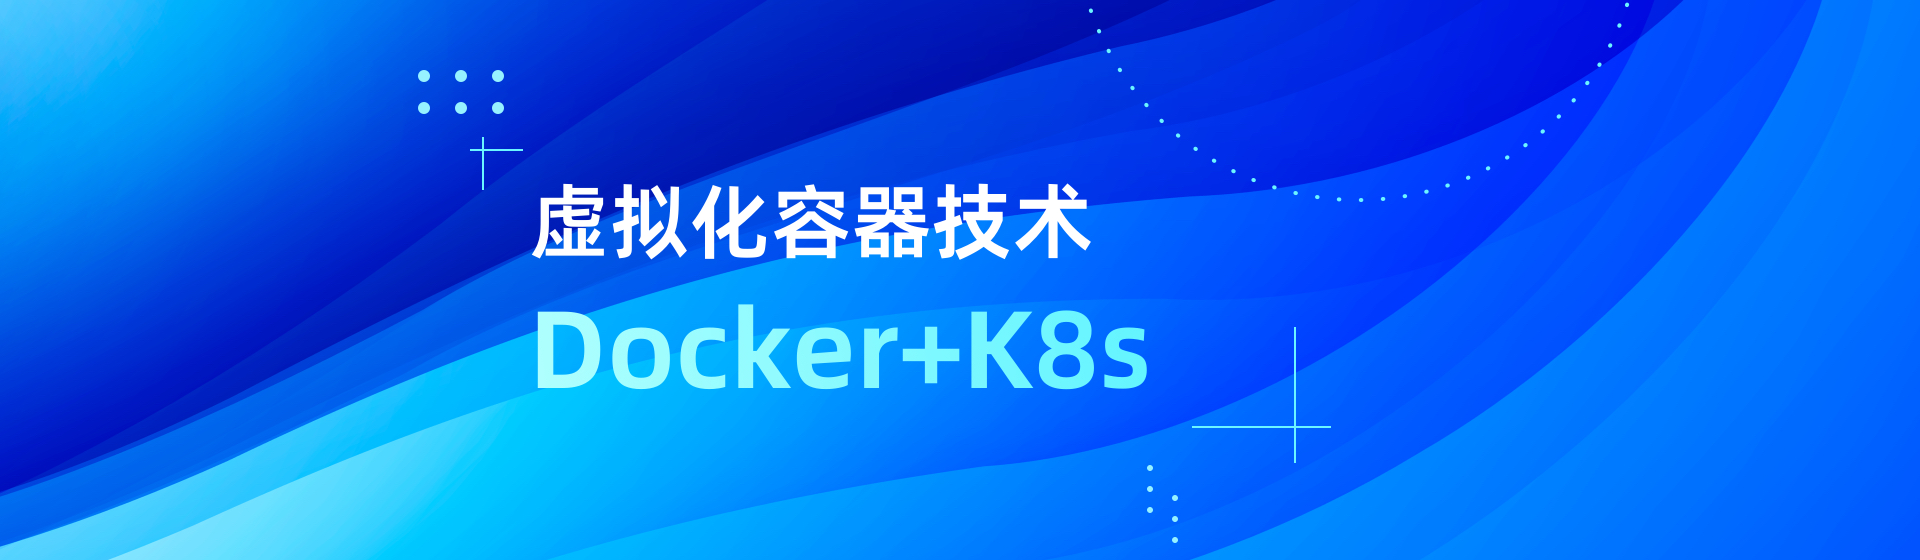 虚拟化容器技术Docker+K8s